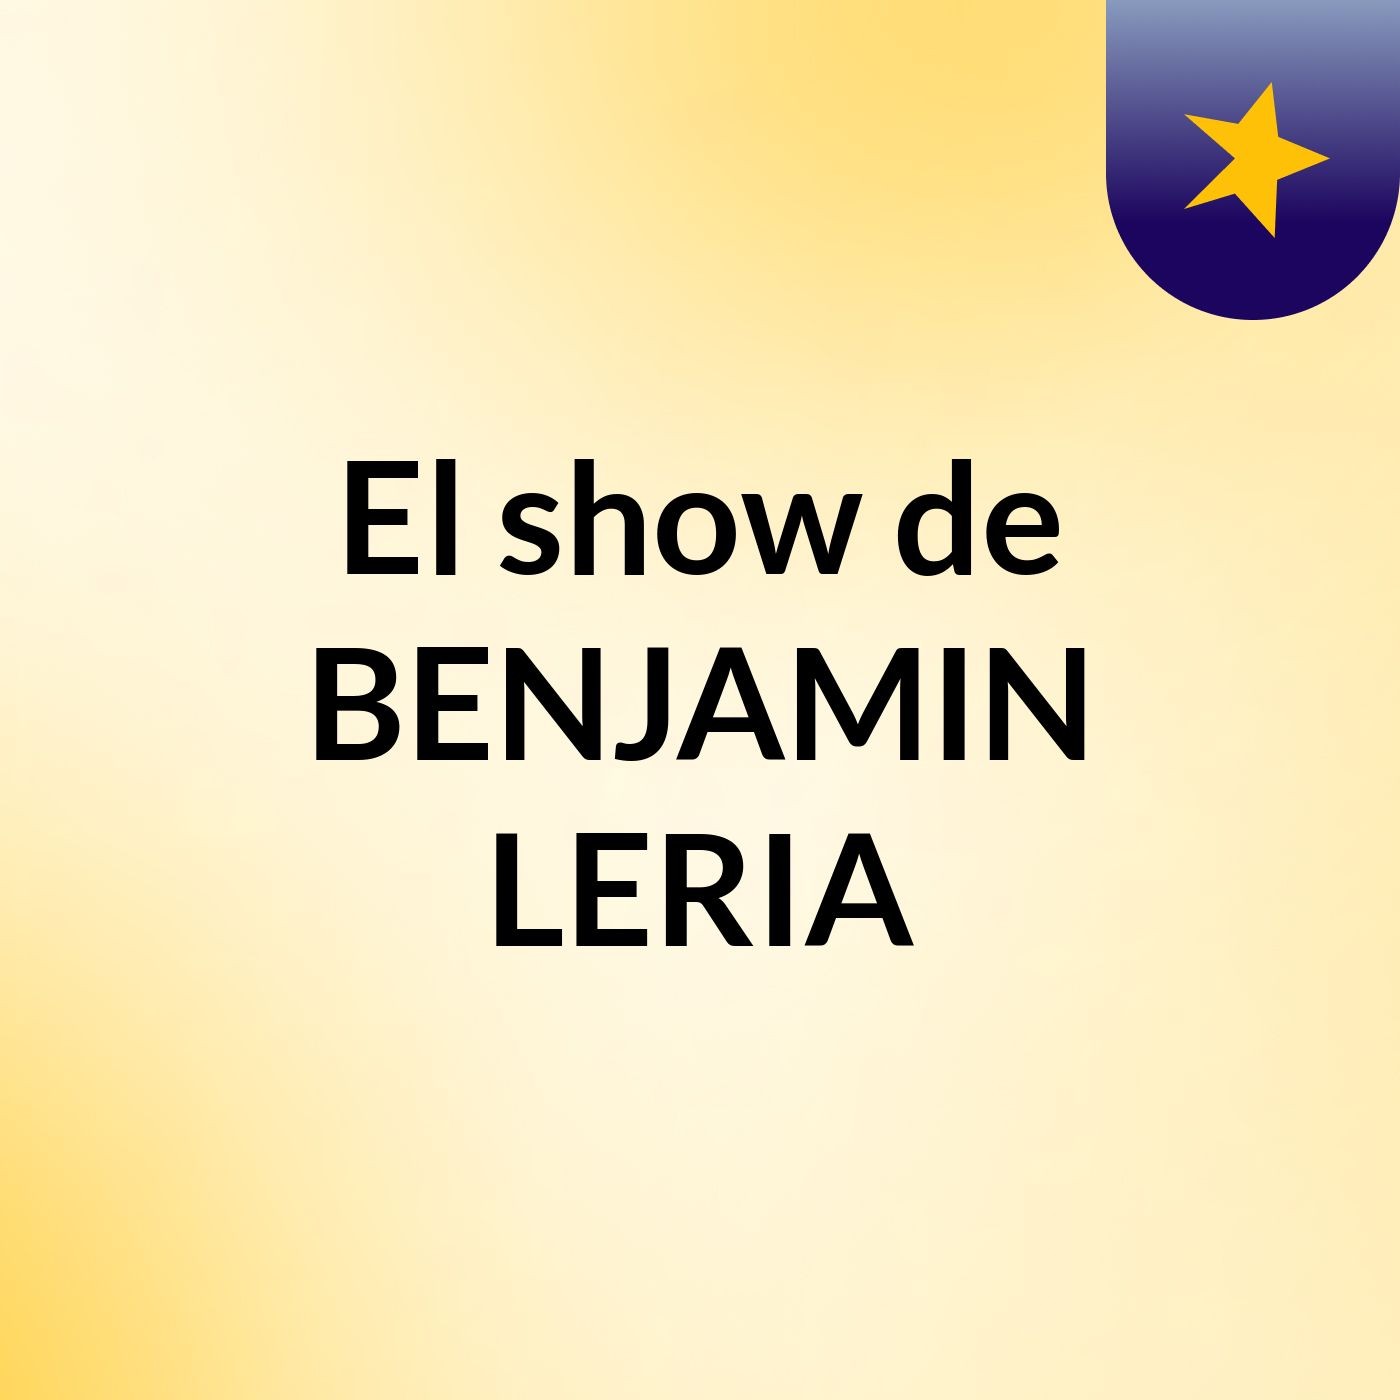 Episodio 9 - El show de BENJAMIN LERIA